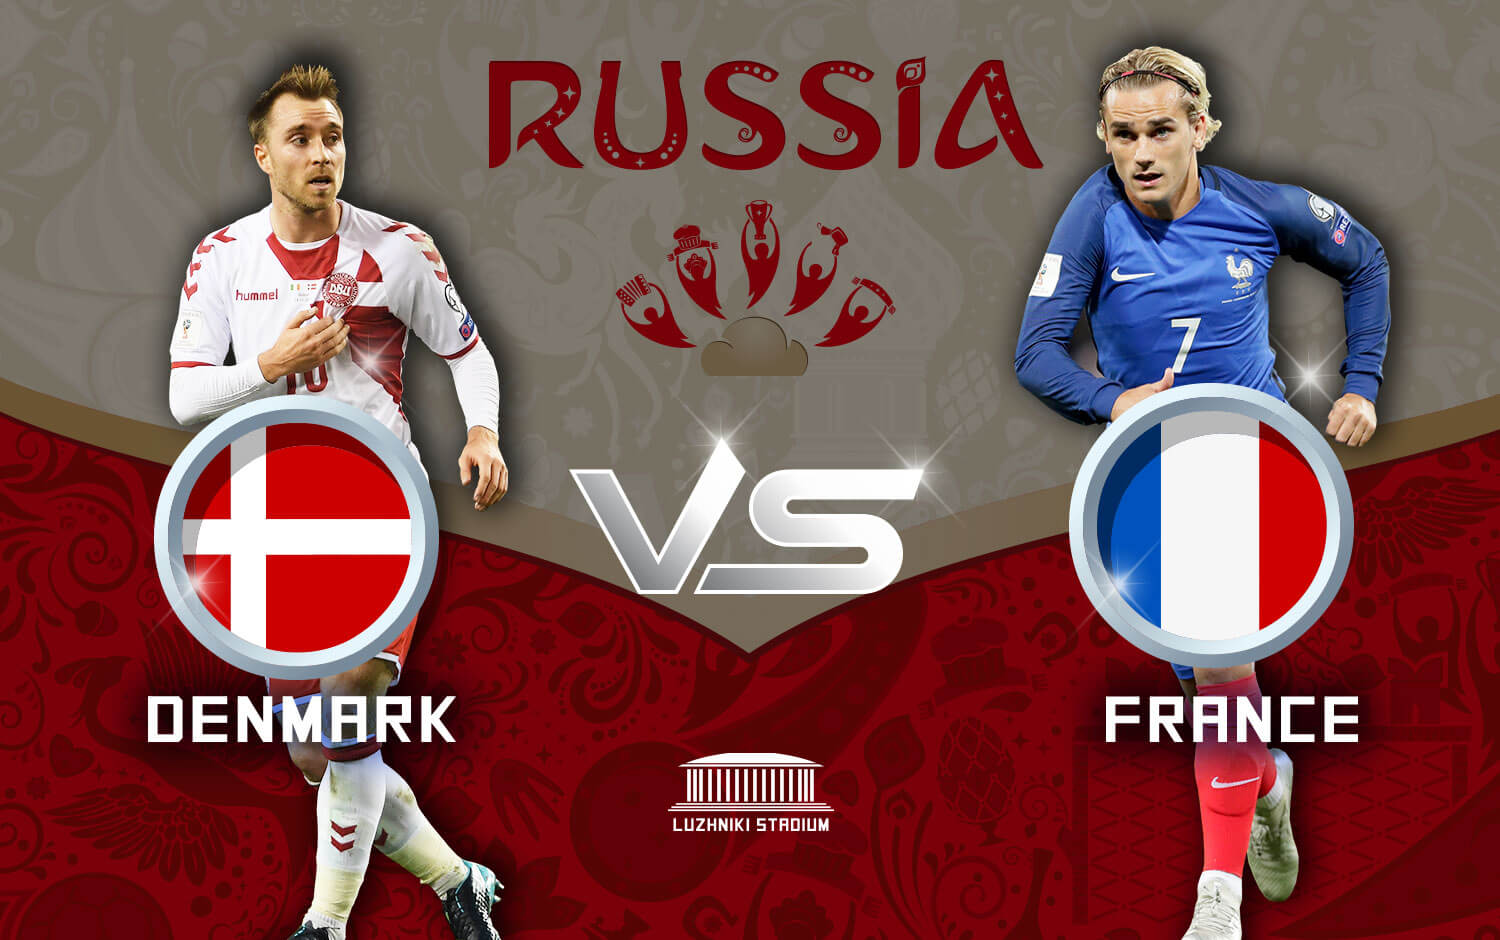 Denmark Vs France, final